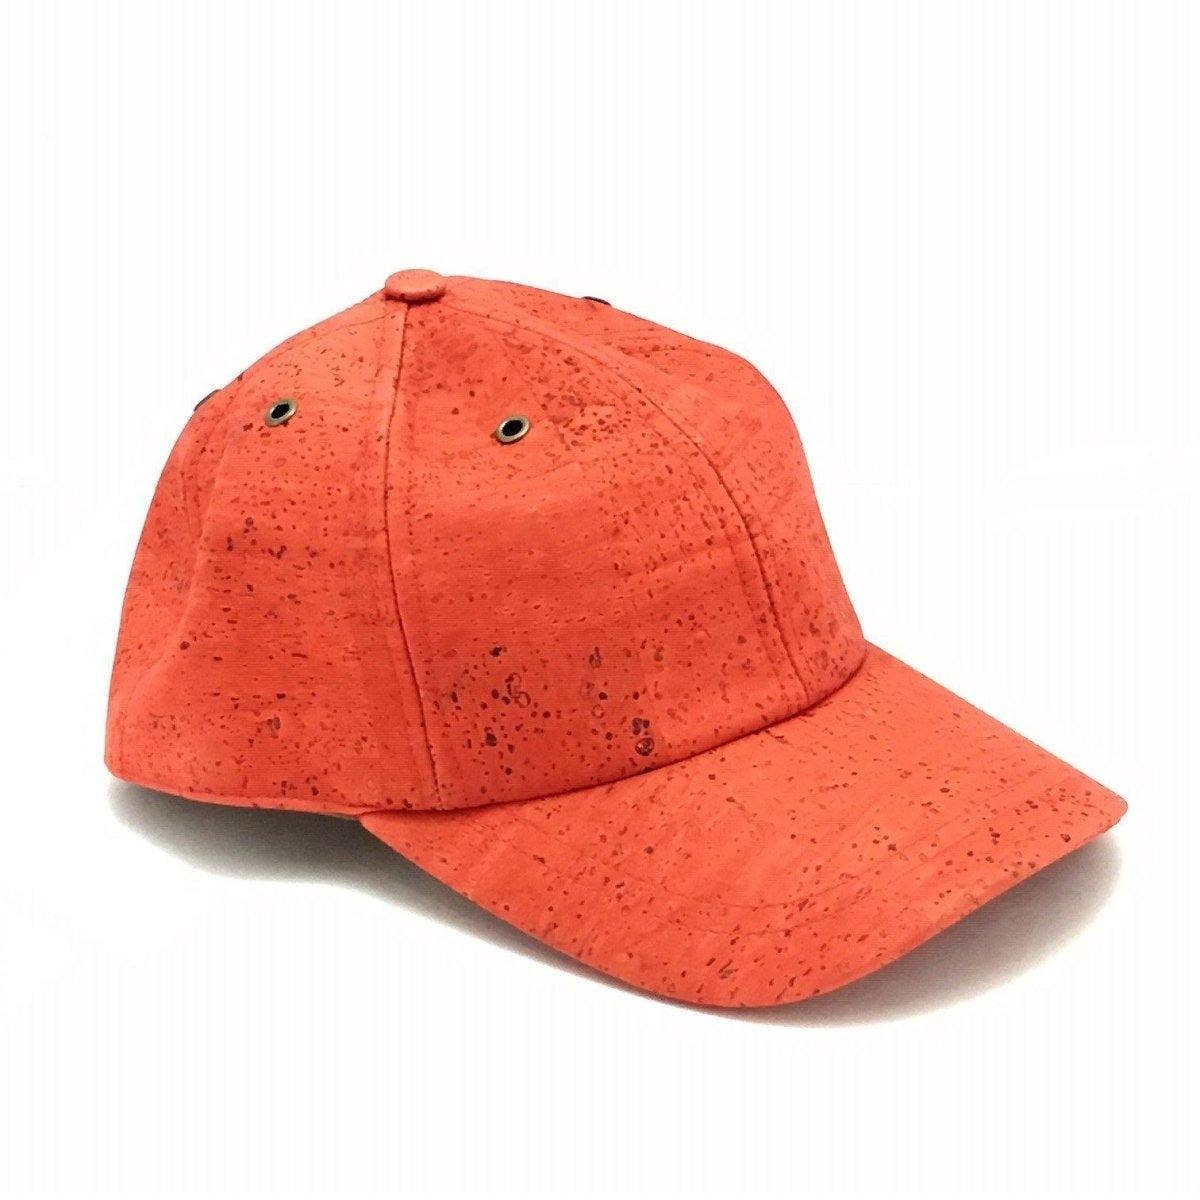 Cork Baseball Cap and Vegan Leather Cap in Red